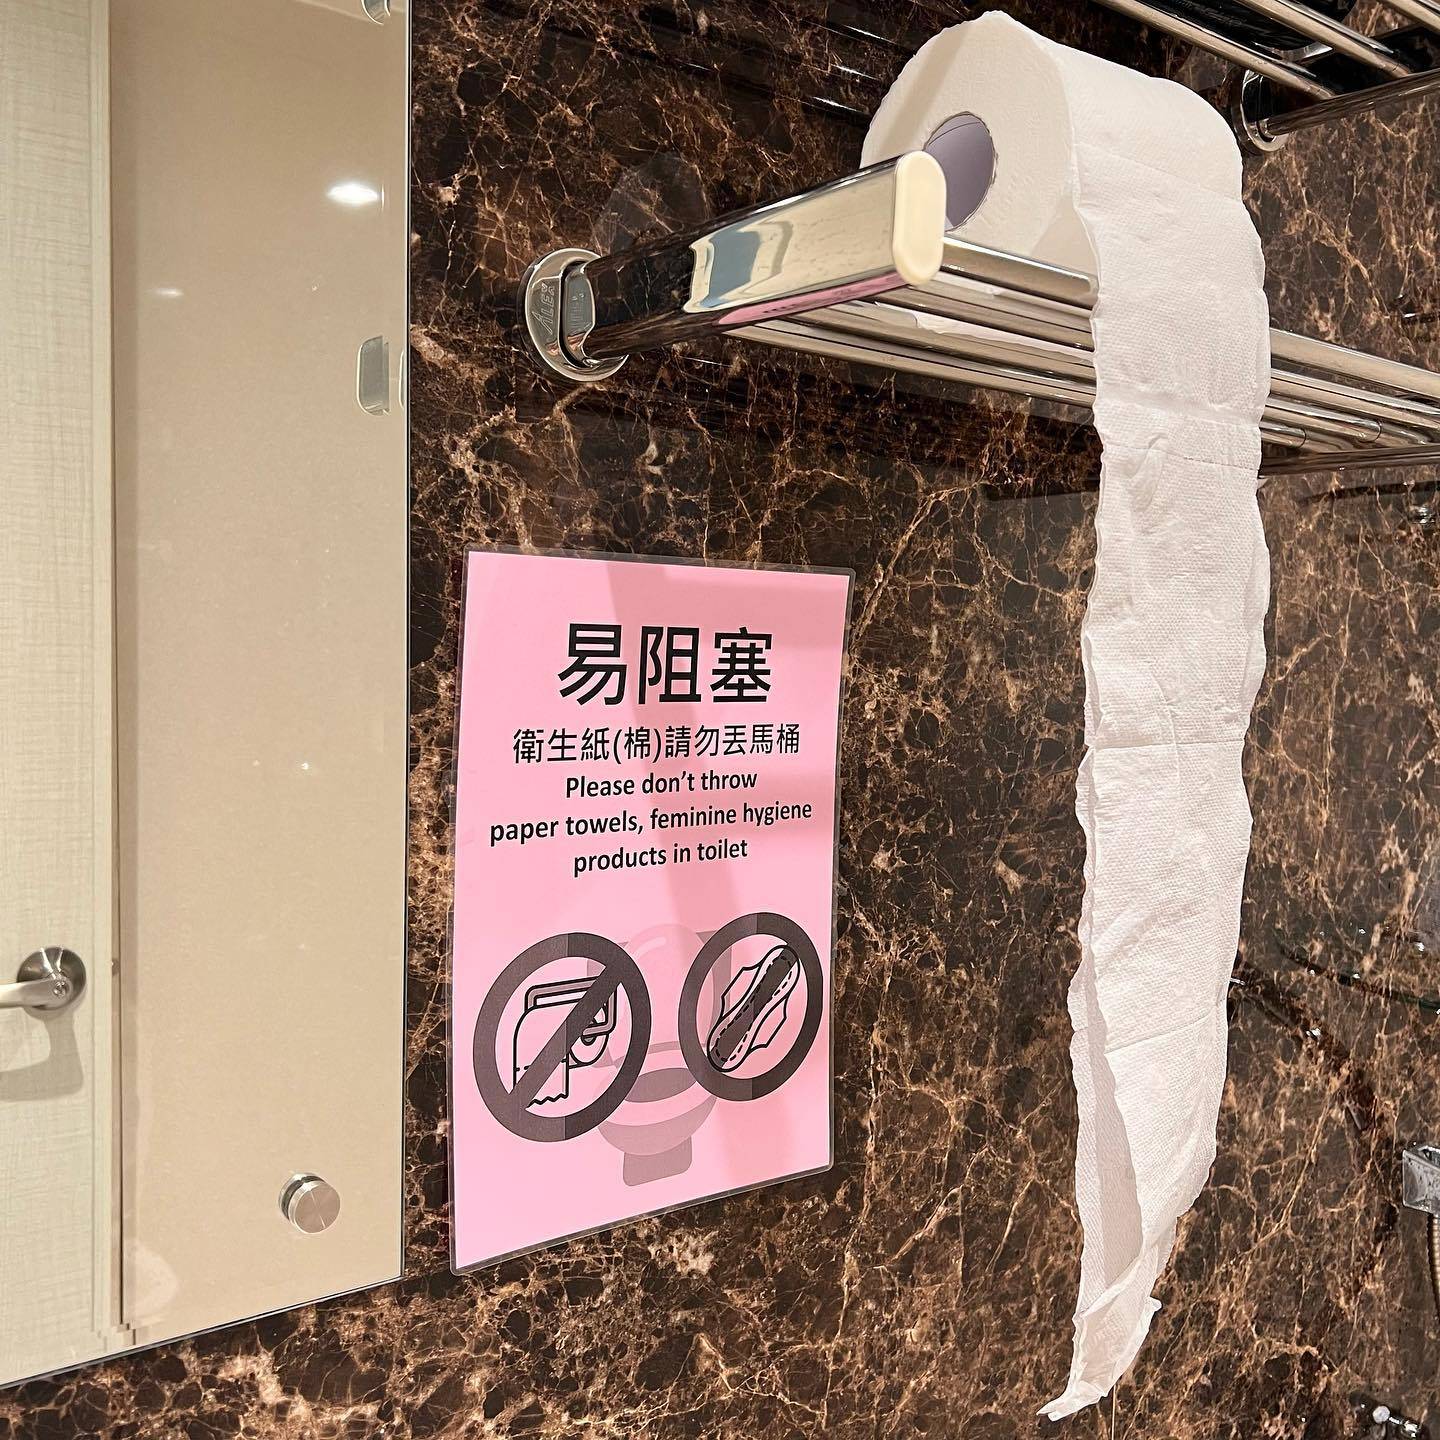 香港與台灣的「廁紙」定義不同